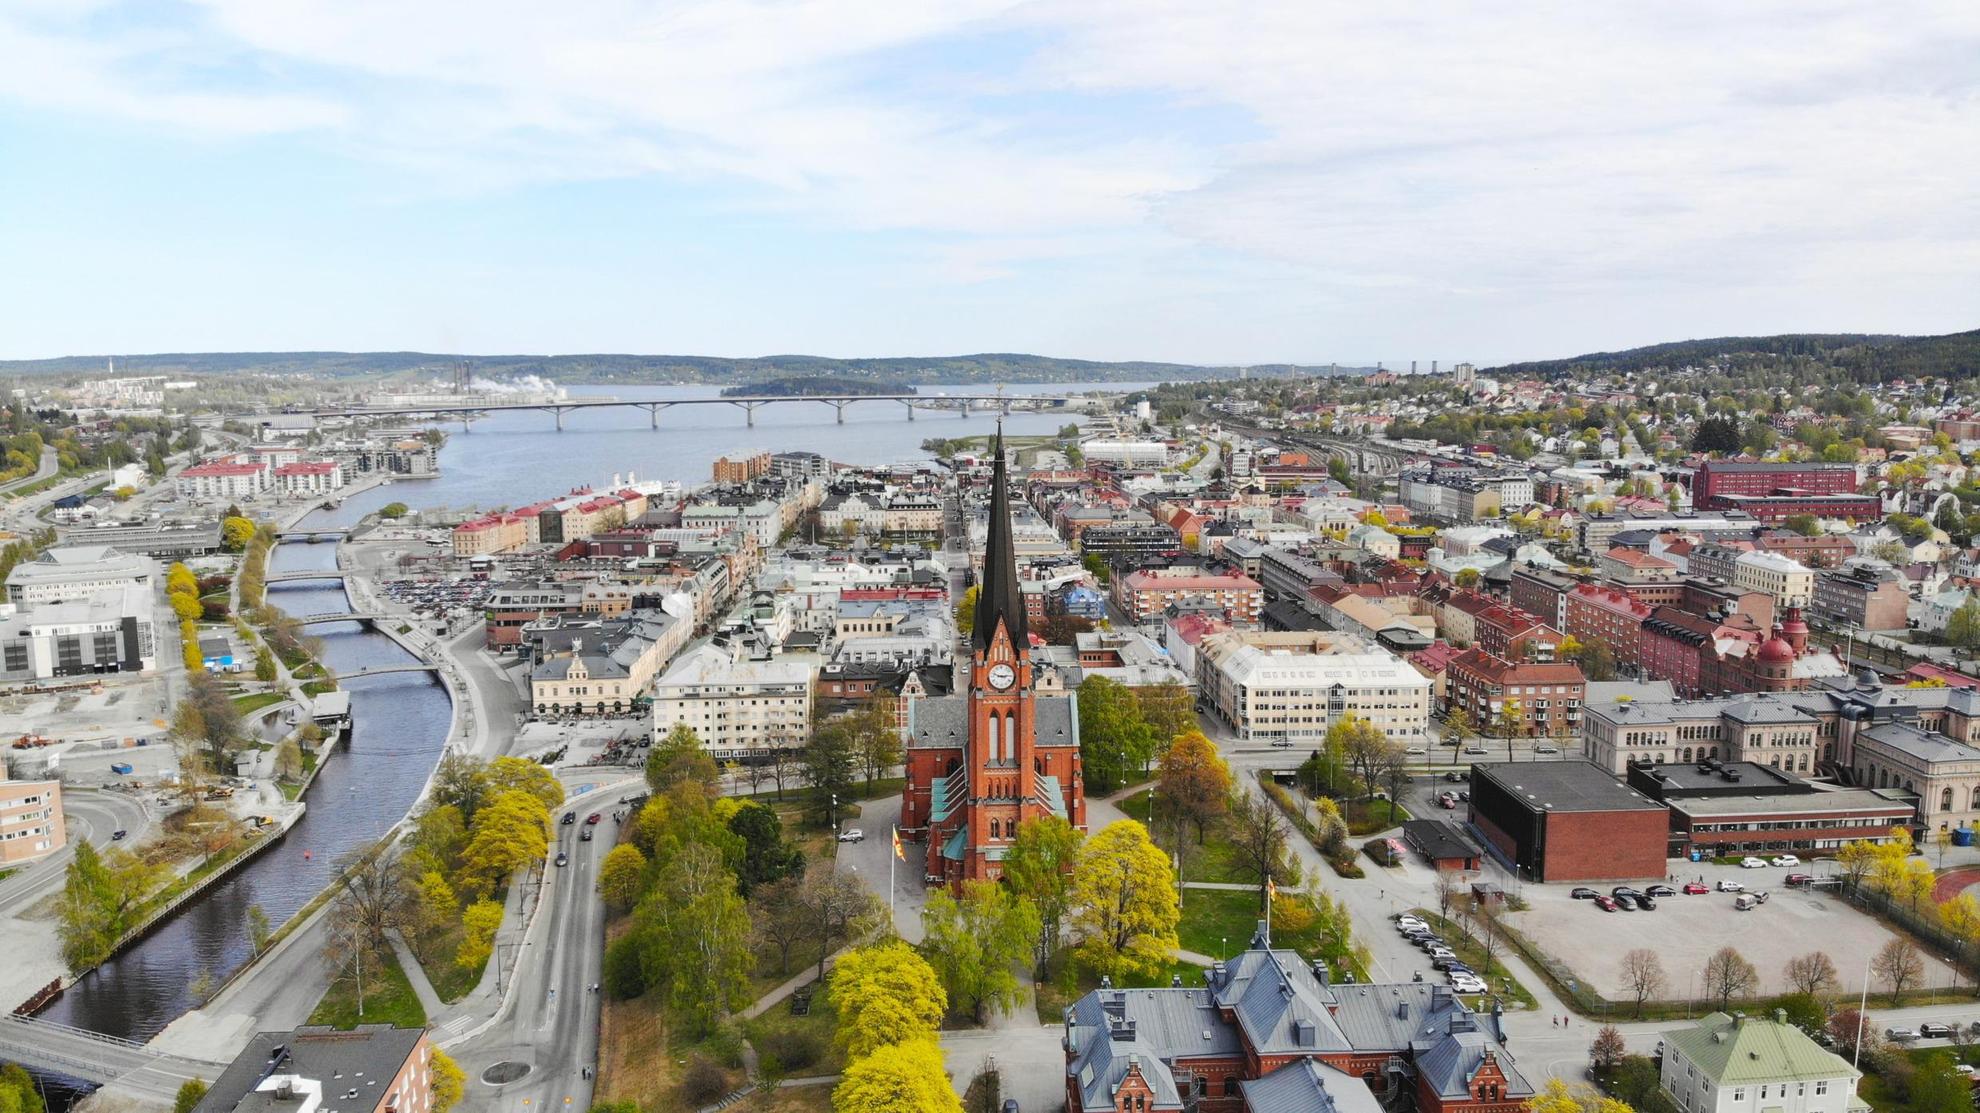 Luftaufnahme der Stadt Sundsvall und der Umgebung. Im Mittelpunkt des Bildes steht die im gotischen Stil erbaute Kirche „Gustav Adolfs kyrka“ mit hohem Turm.